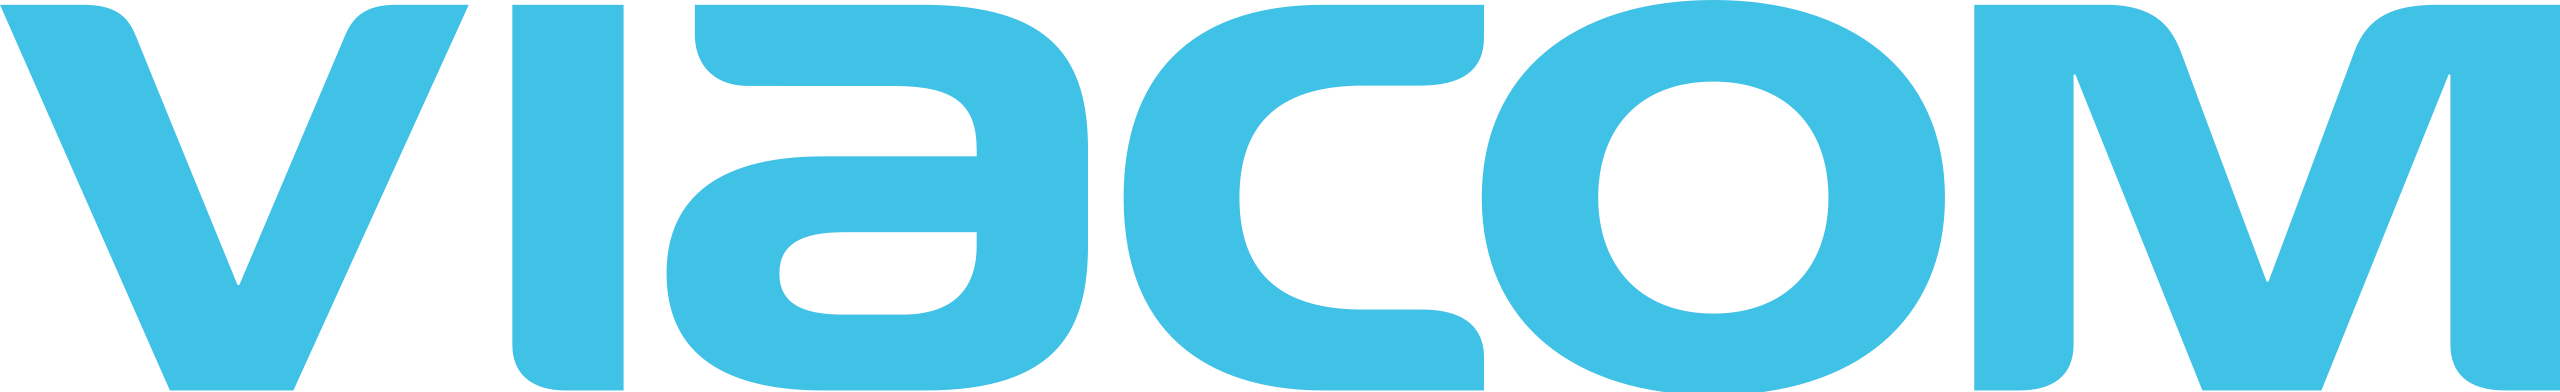 2560px-Viacom_blue_logo.svg